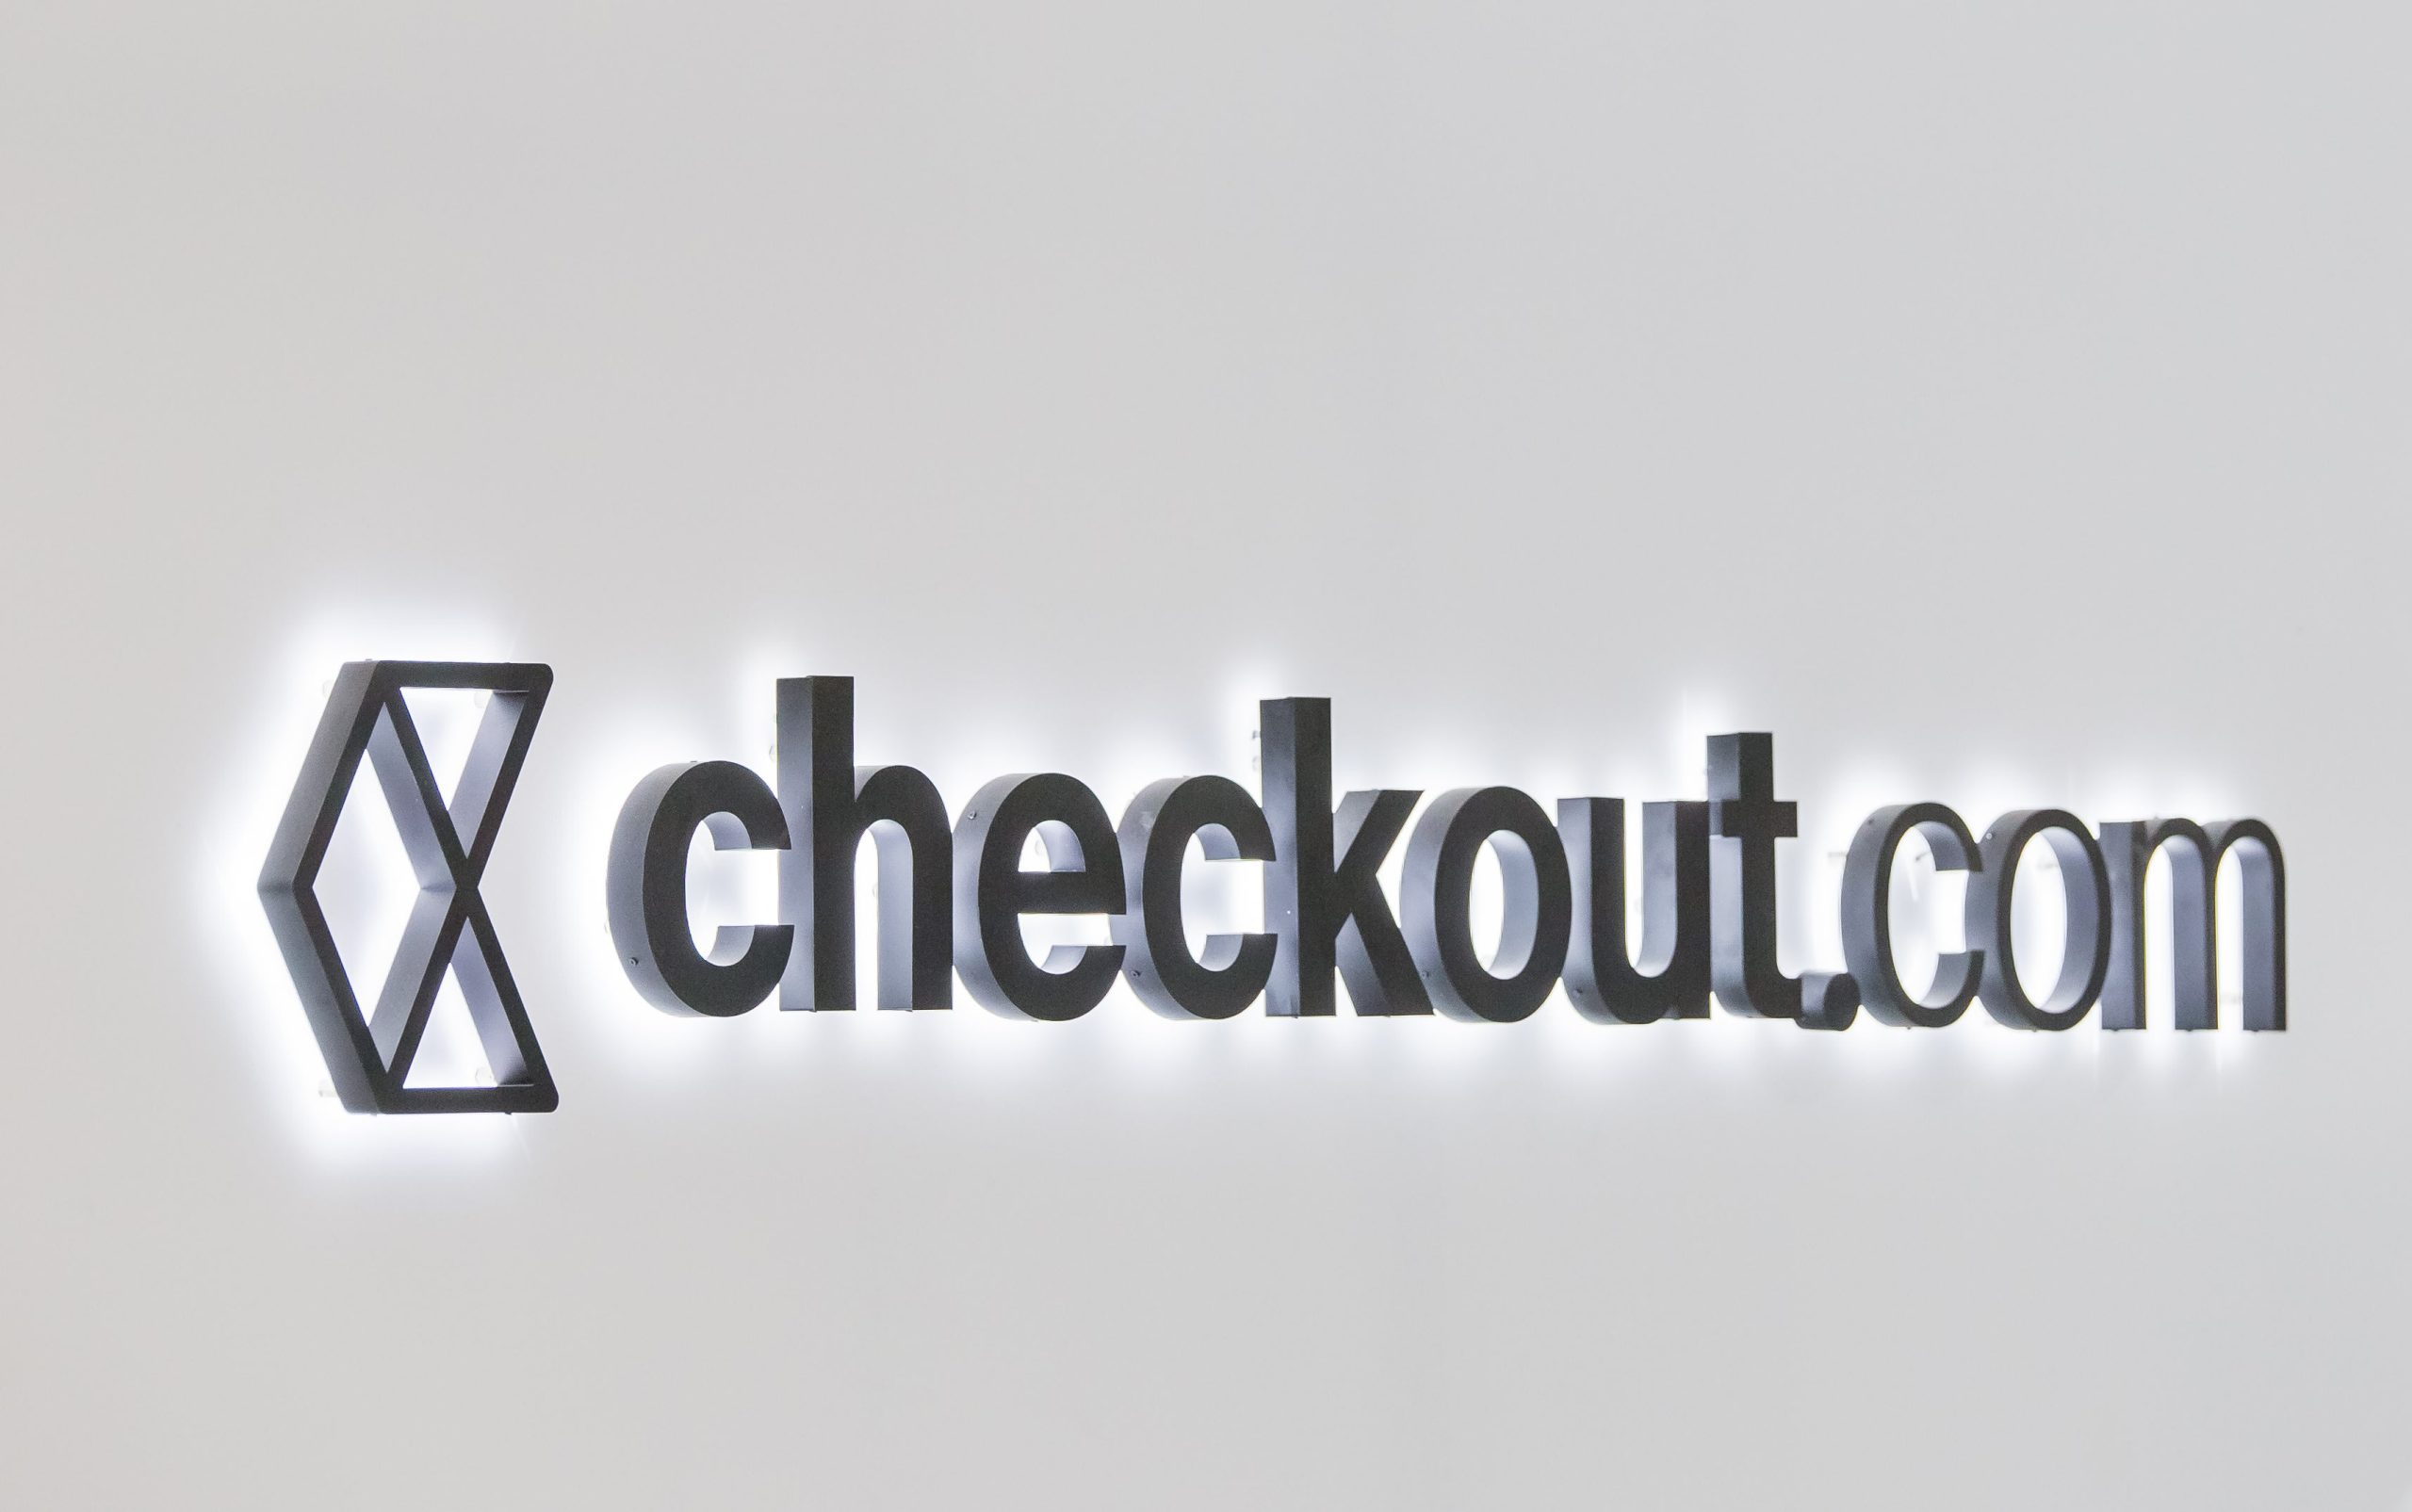 Checkout.com утроява оценката си до 5,5 милиарда долара